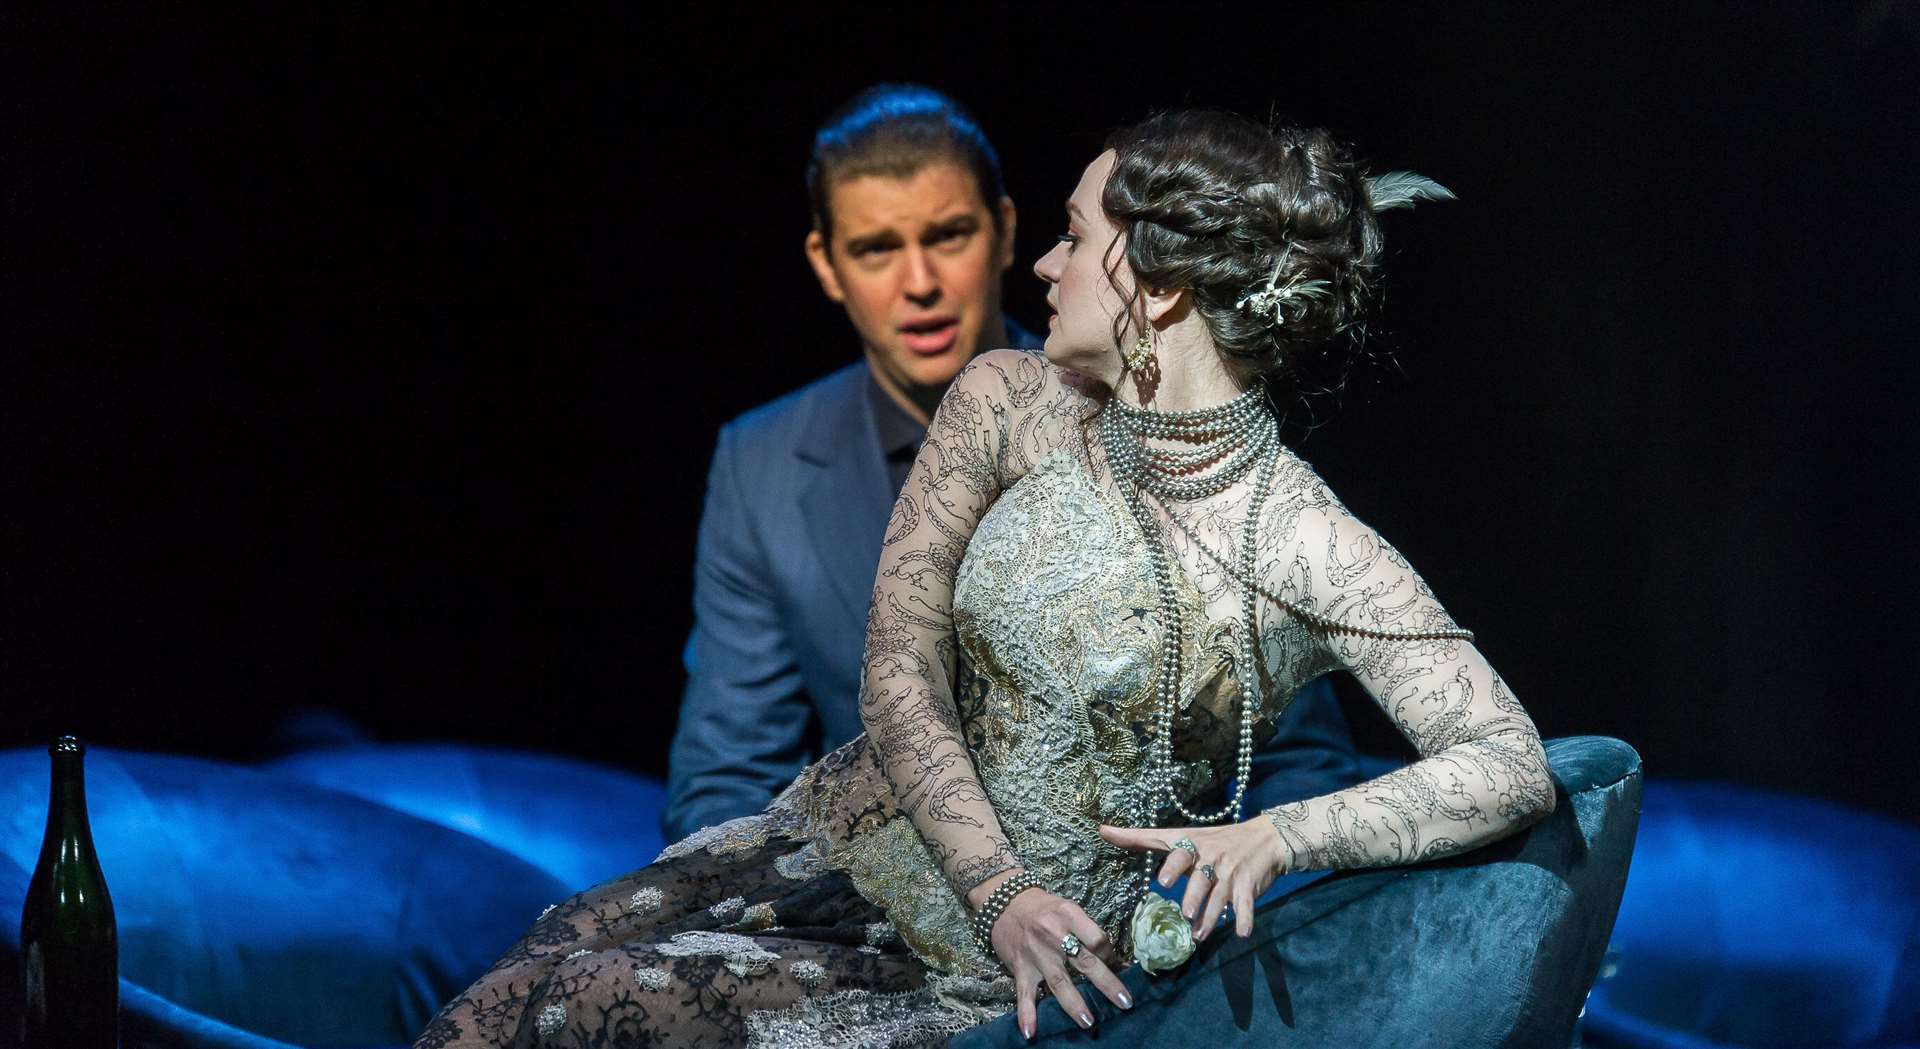 LA Traviata by Verdi Picture: Clive Barda